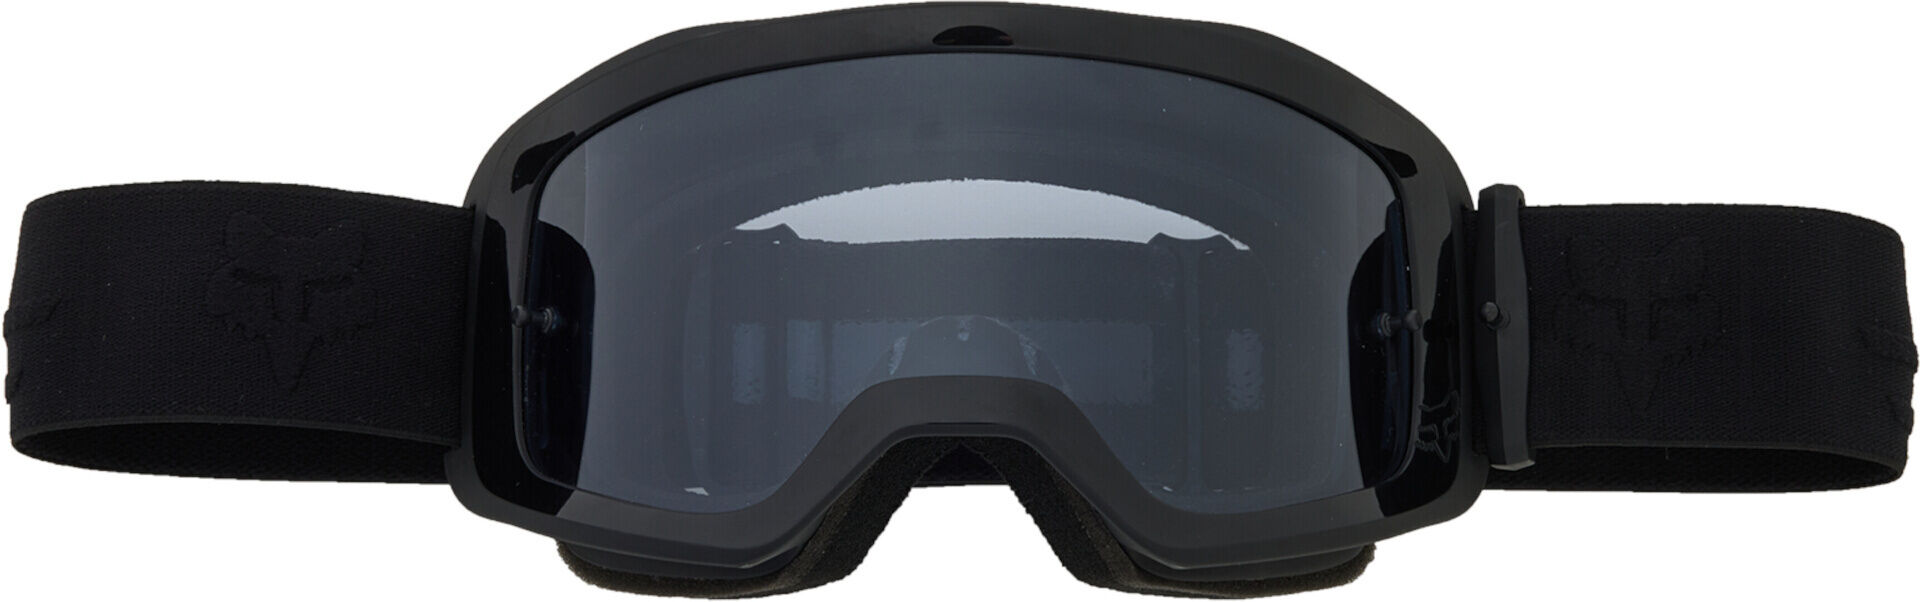 Fox Main Core Smoke Gafas de motocross - Negro (un tamaño)